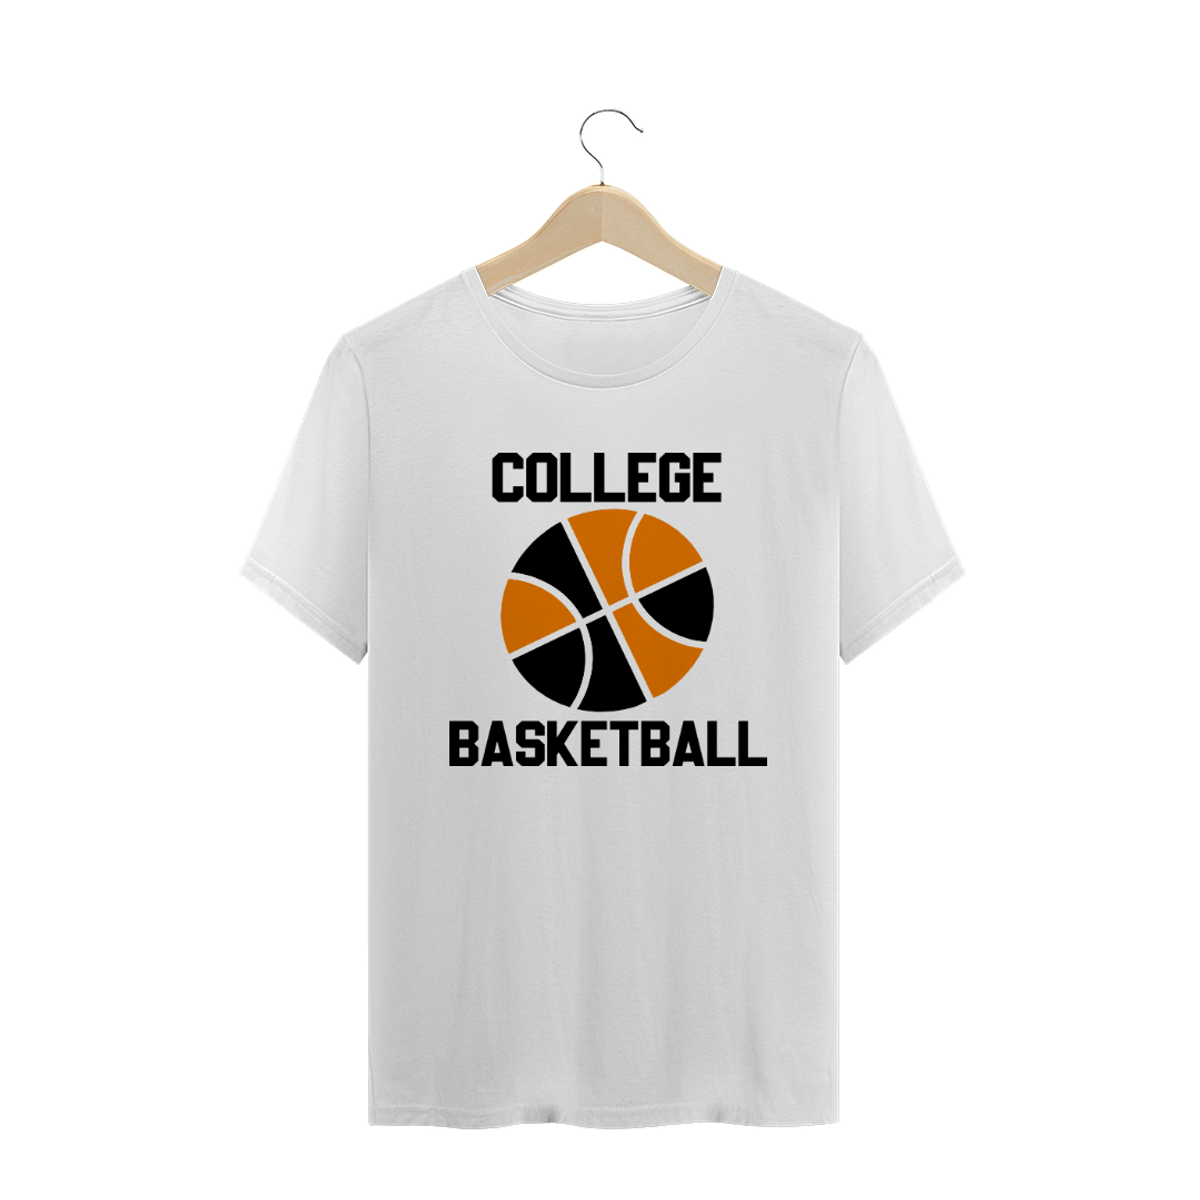 Nome do produtoCollege Basketball - SPT 9c200628